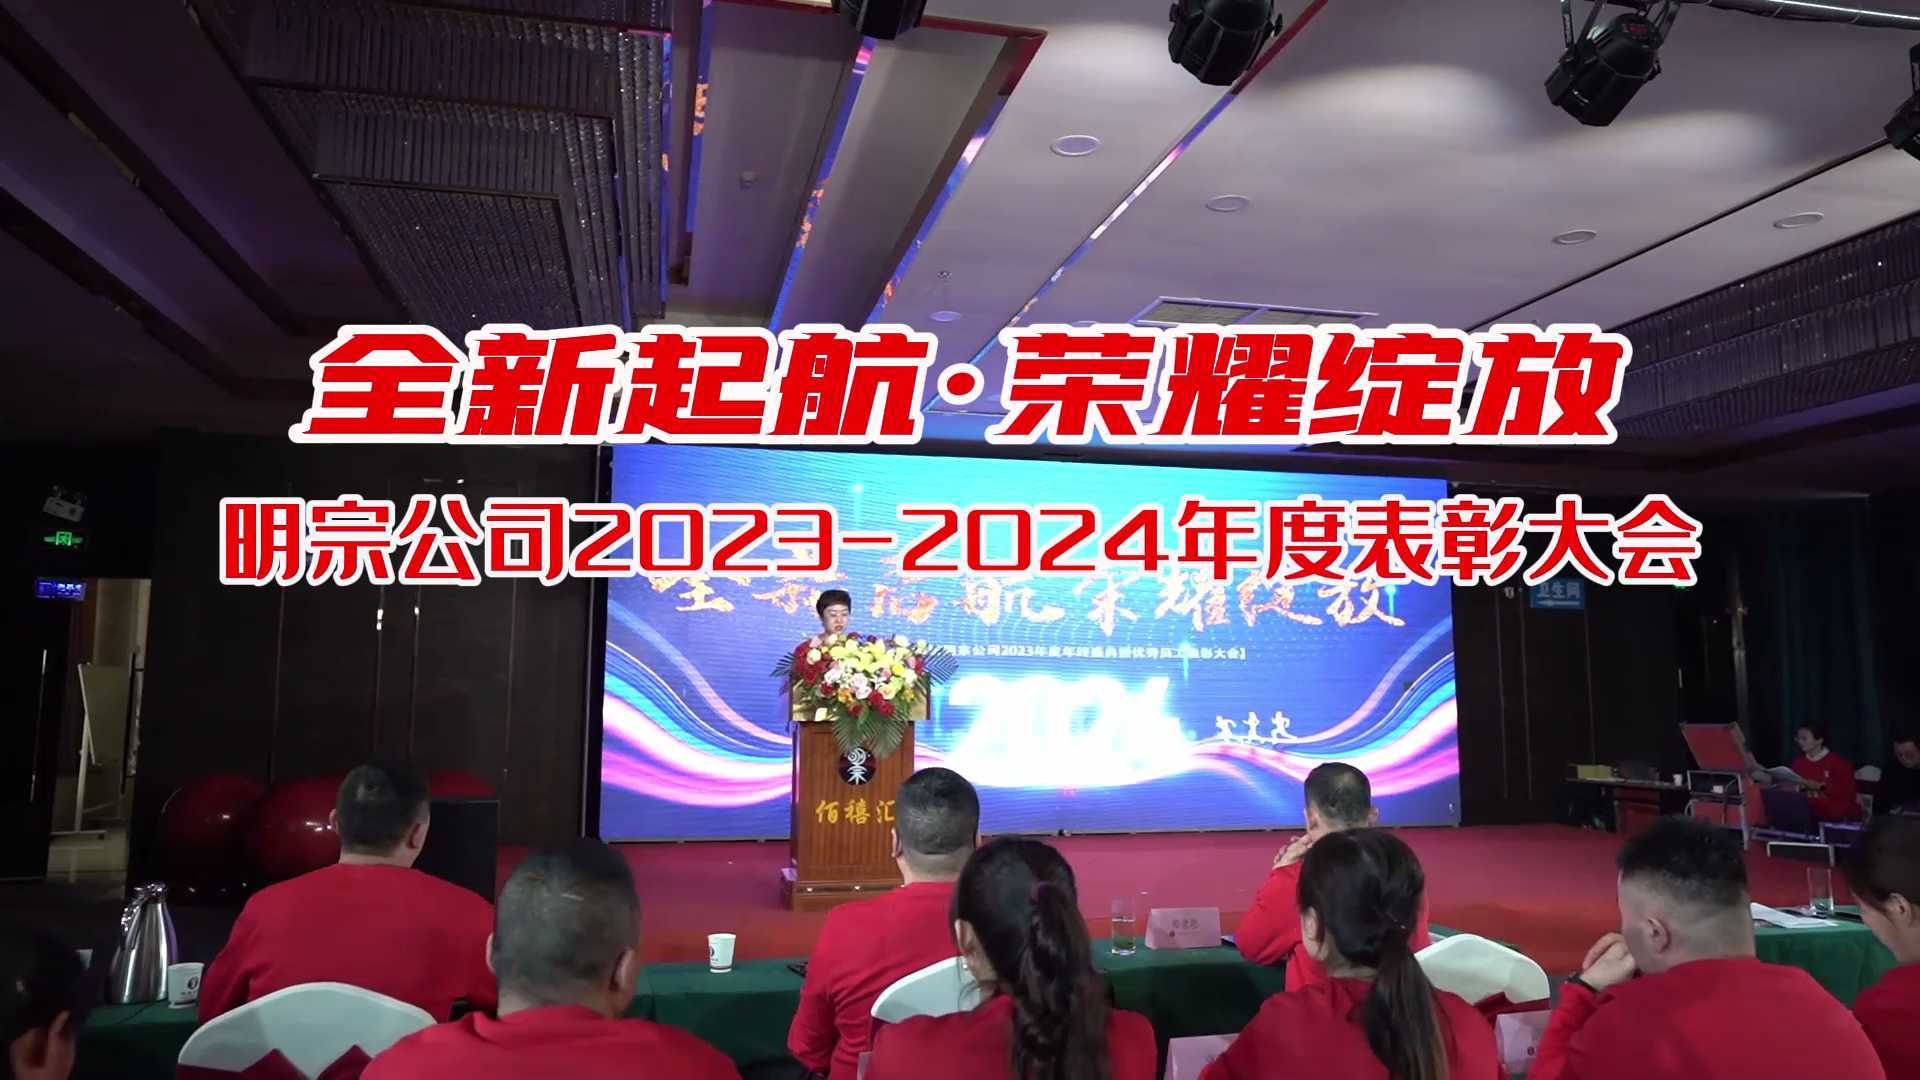 潍坊明宗公司2023-2024年度表彰大会